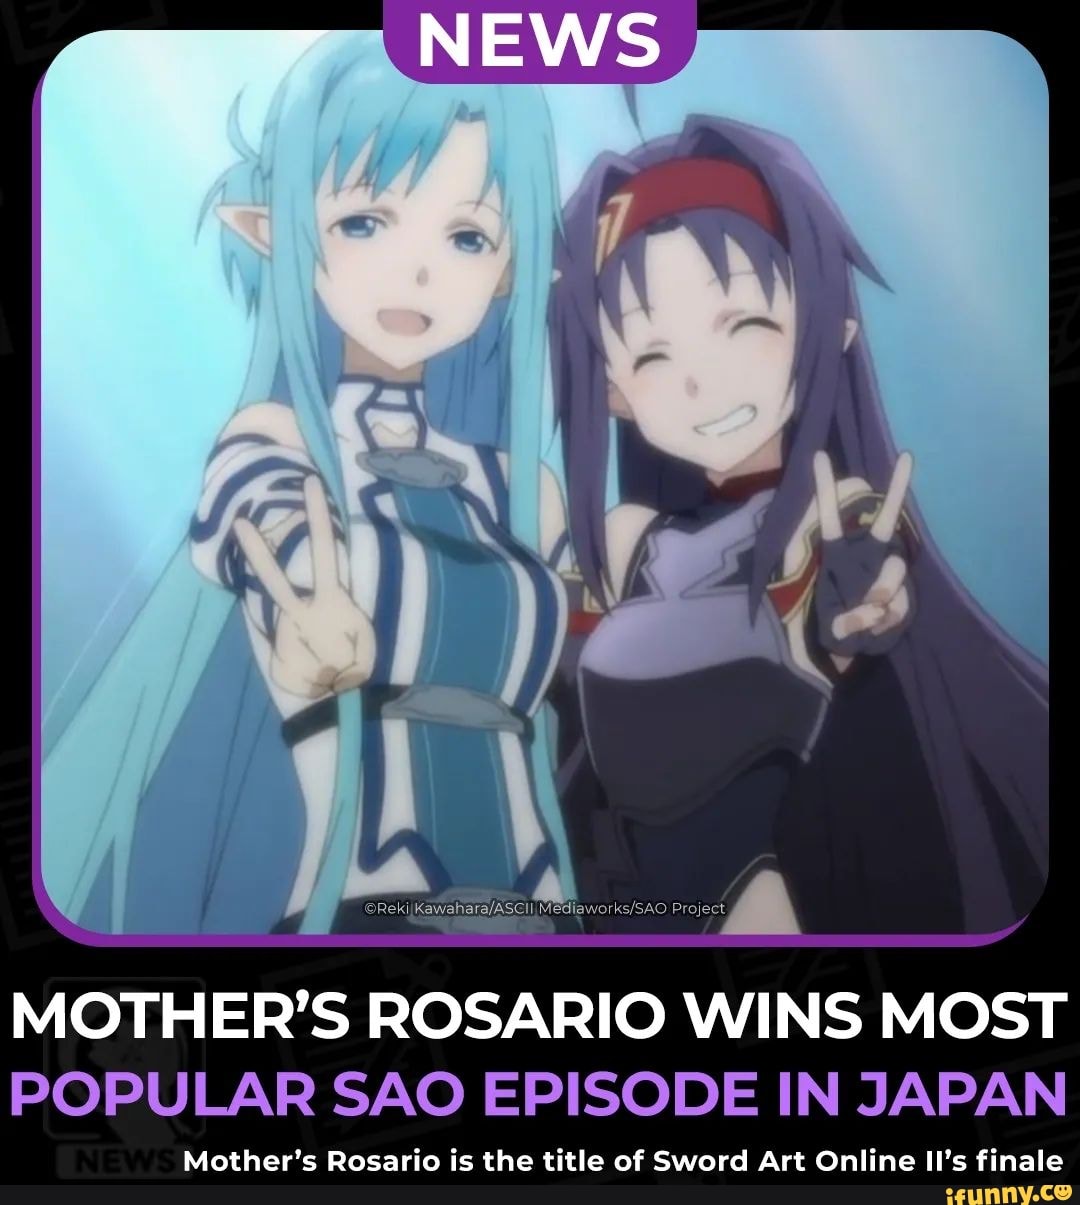 Mother's Rosario Voted Most Popular Sword Art Online Episode in